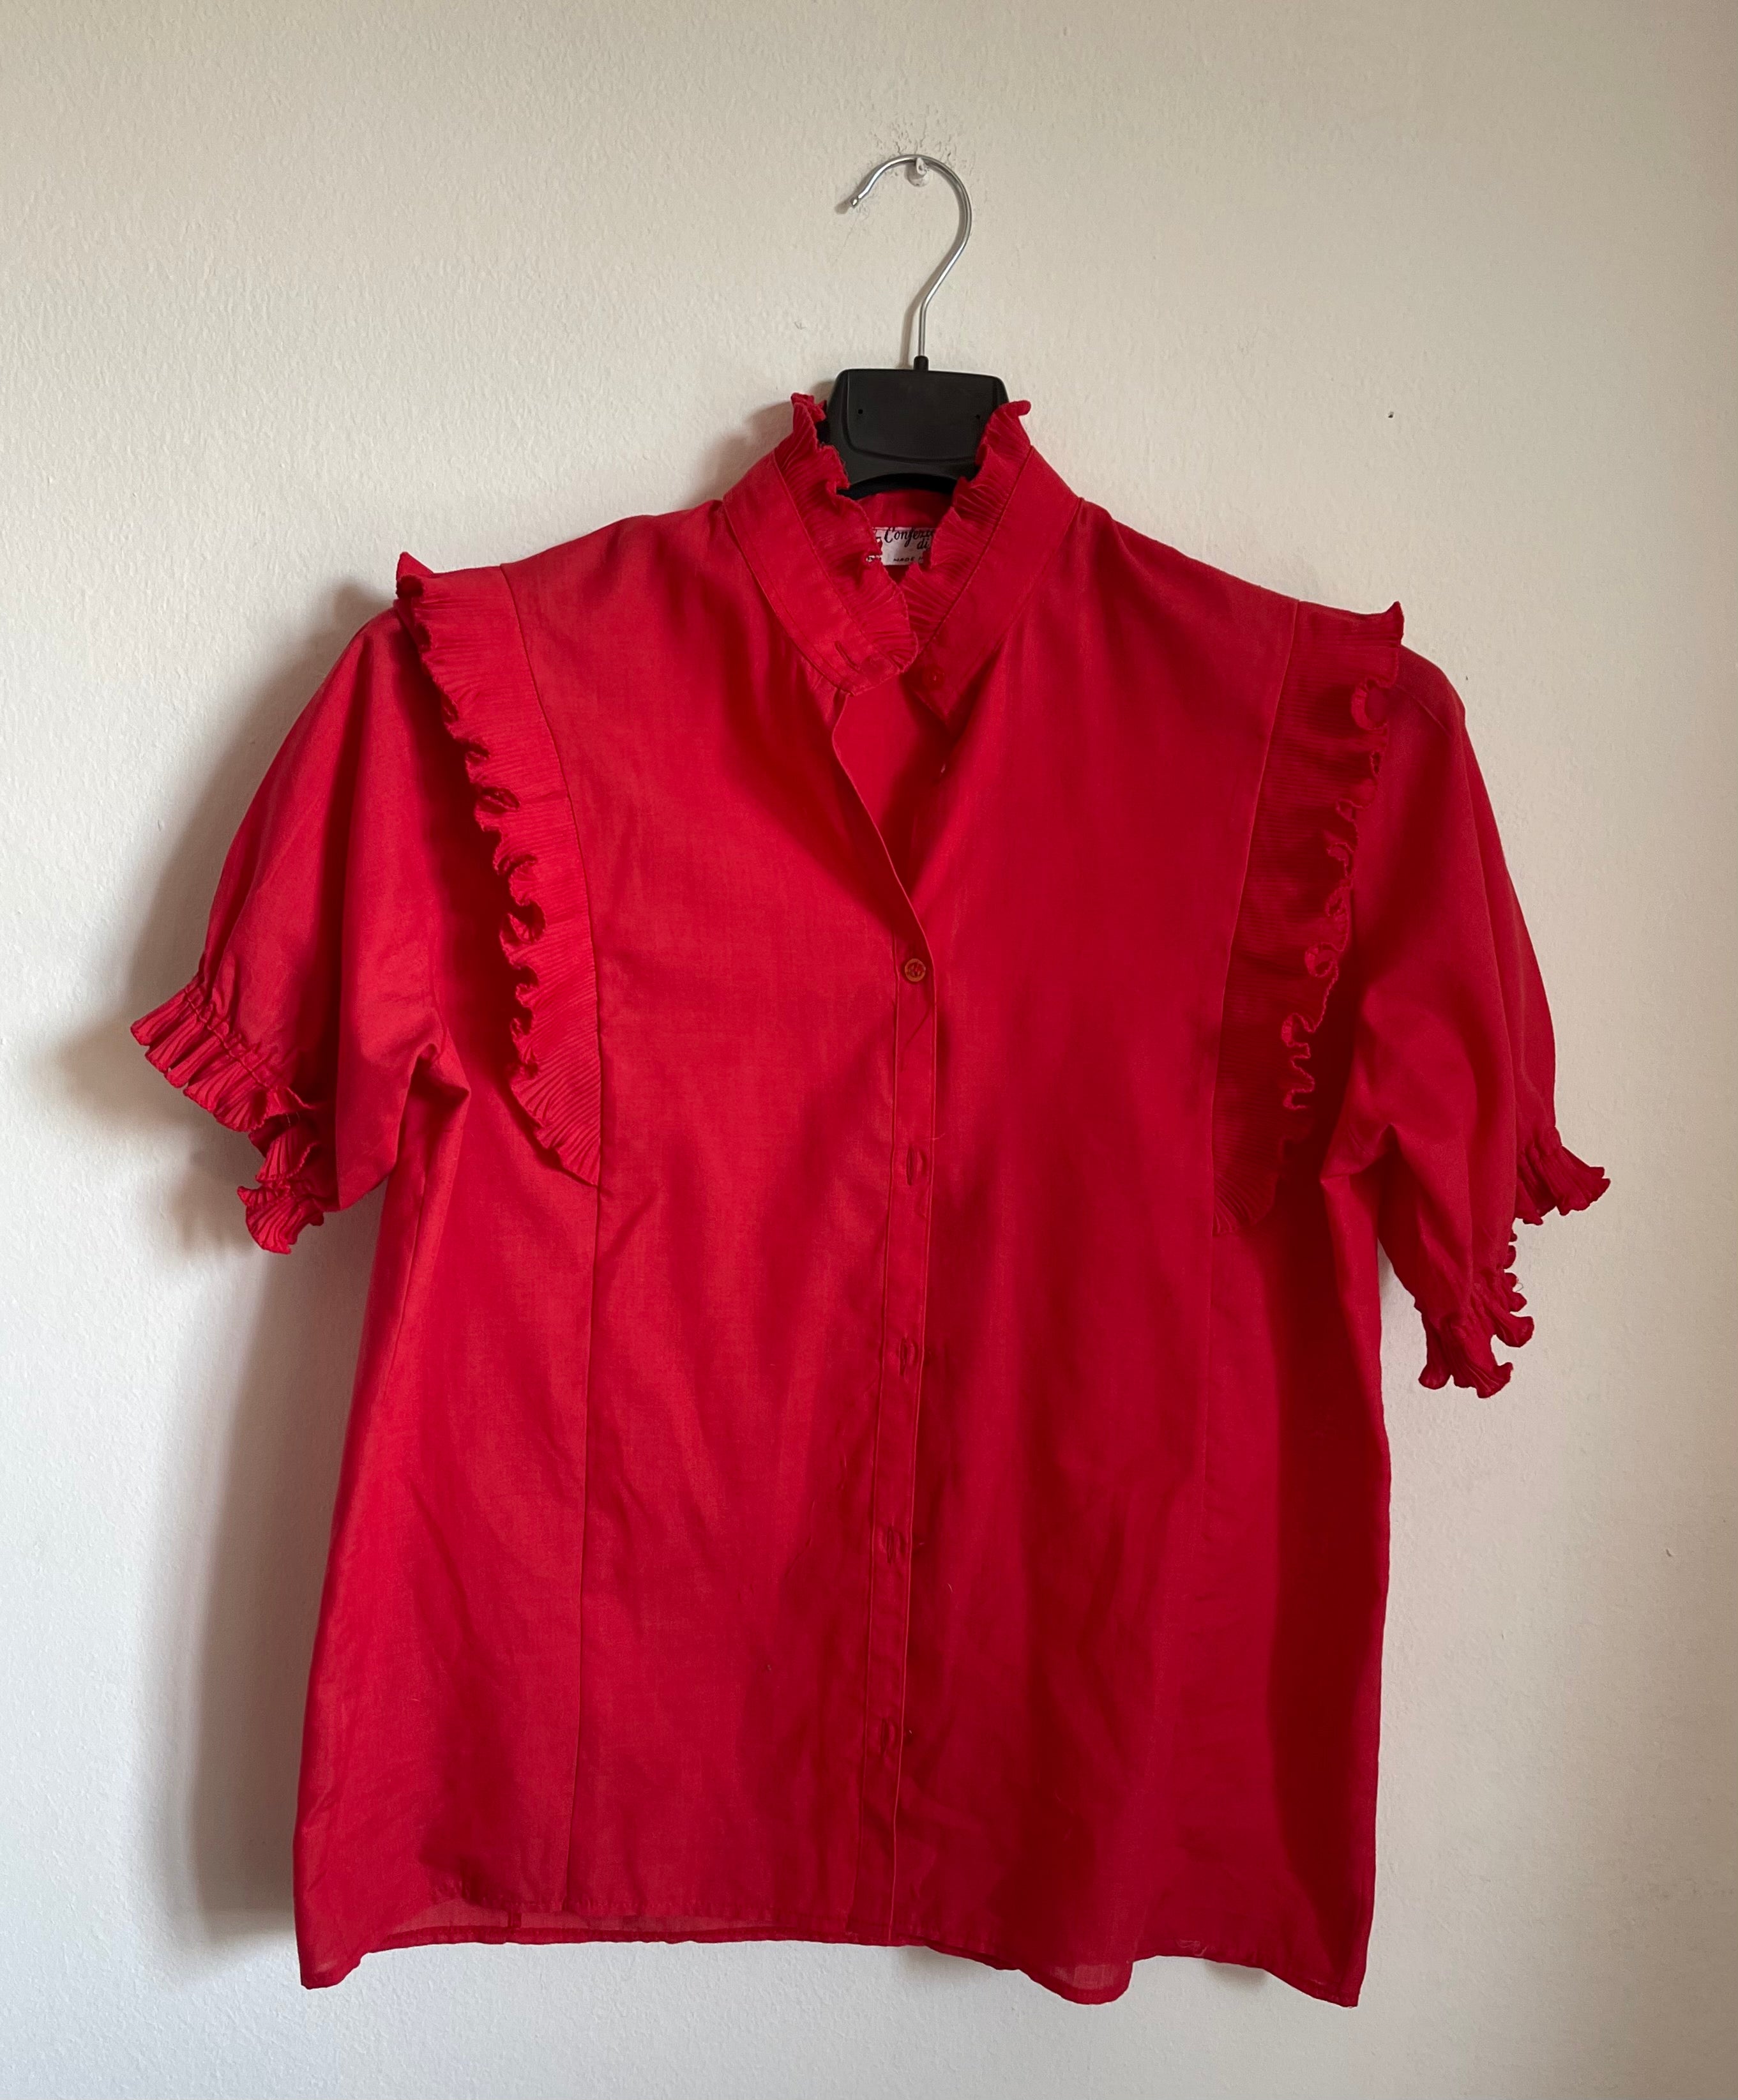 Red ruffle shirt